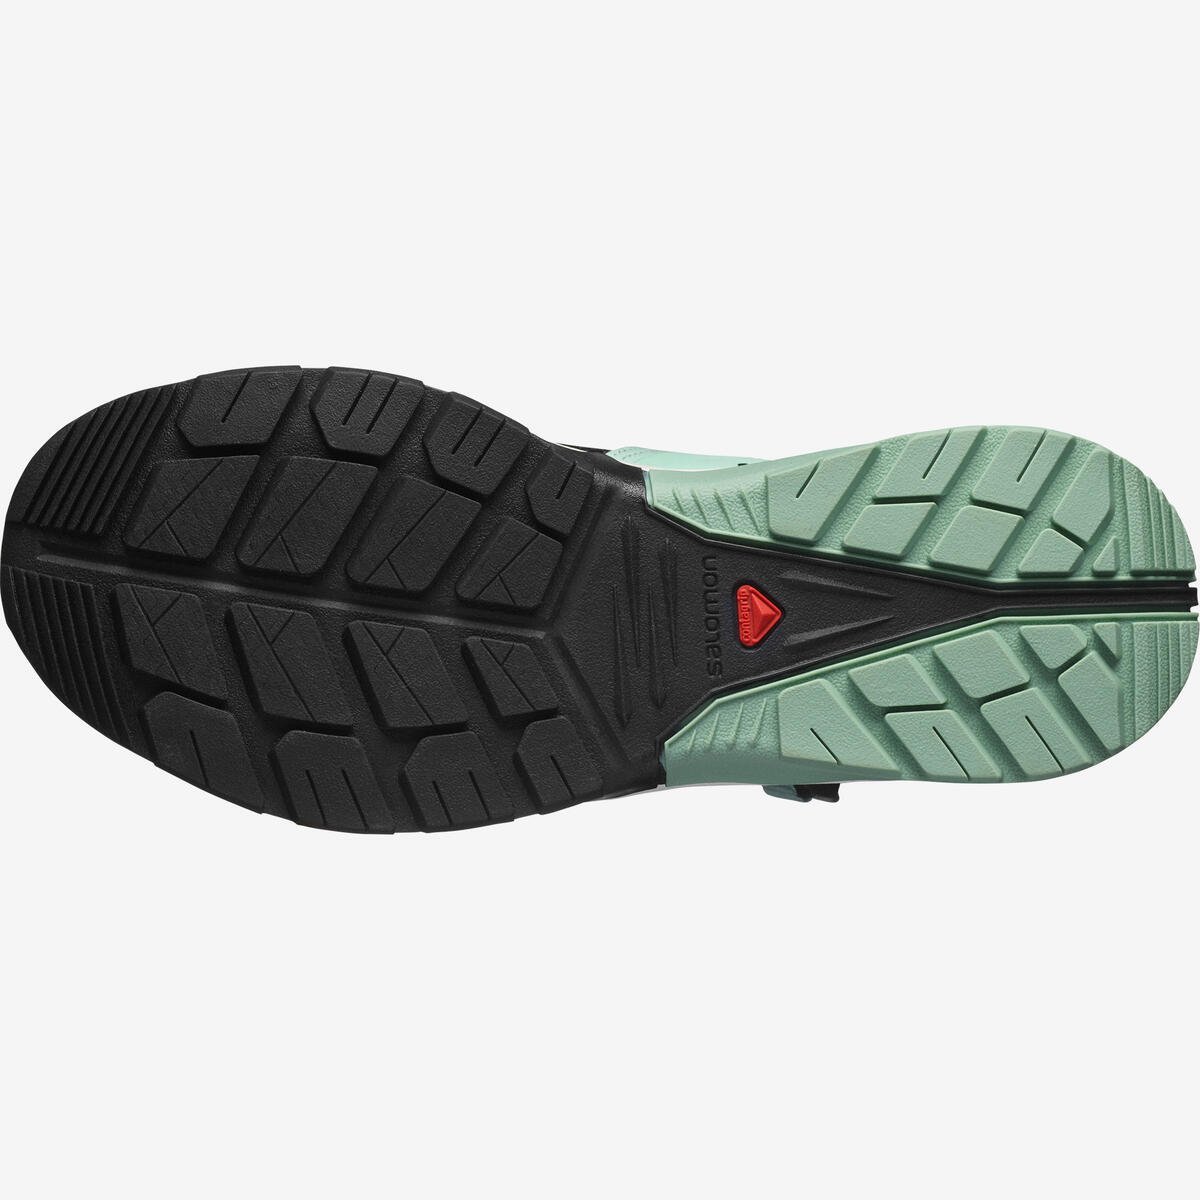 Sandále Salomon TECH AMPHIB 4 W - čierna/zelená